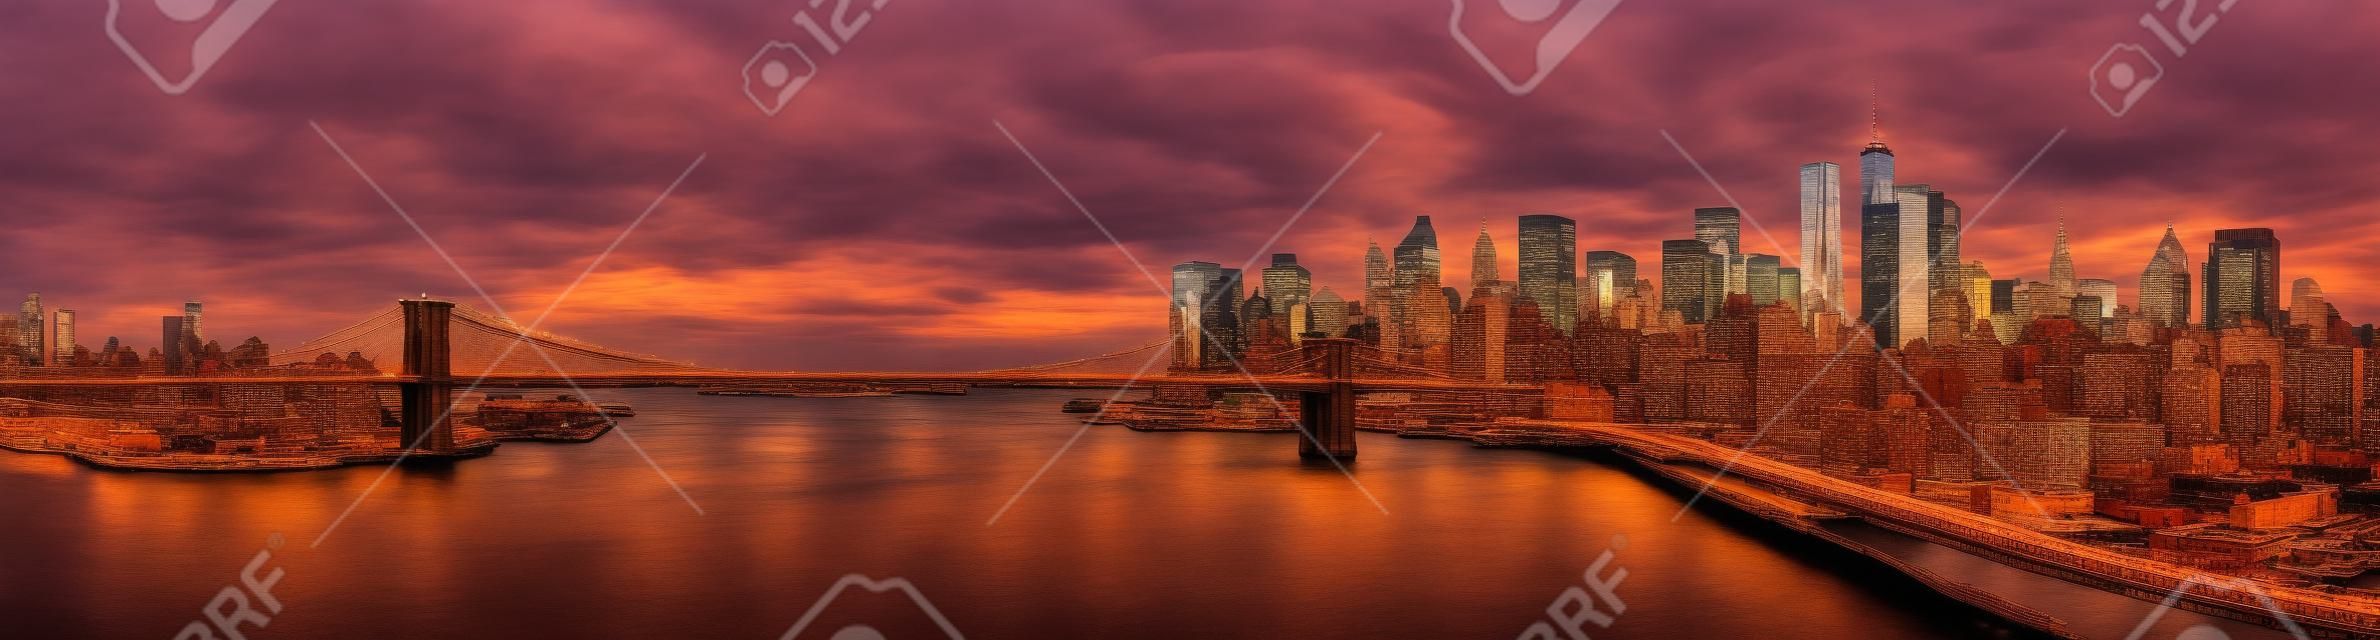 Brooklyn-Brücke Panorama bei Sonnenuntergang. Das Wahrzeichen überspannt zwischen Brooklyn und der New Yorker Financial District Skyline, durch den Freedom Tower dominiert.